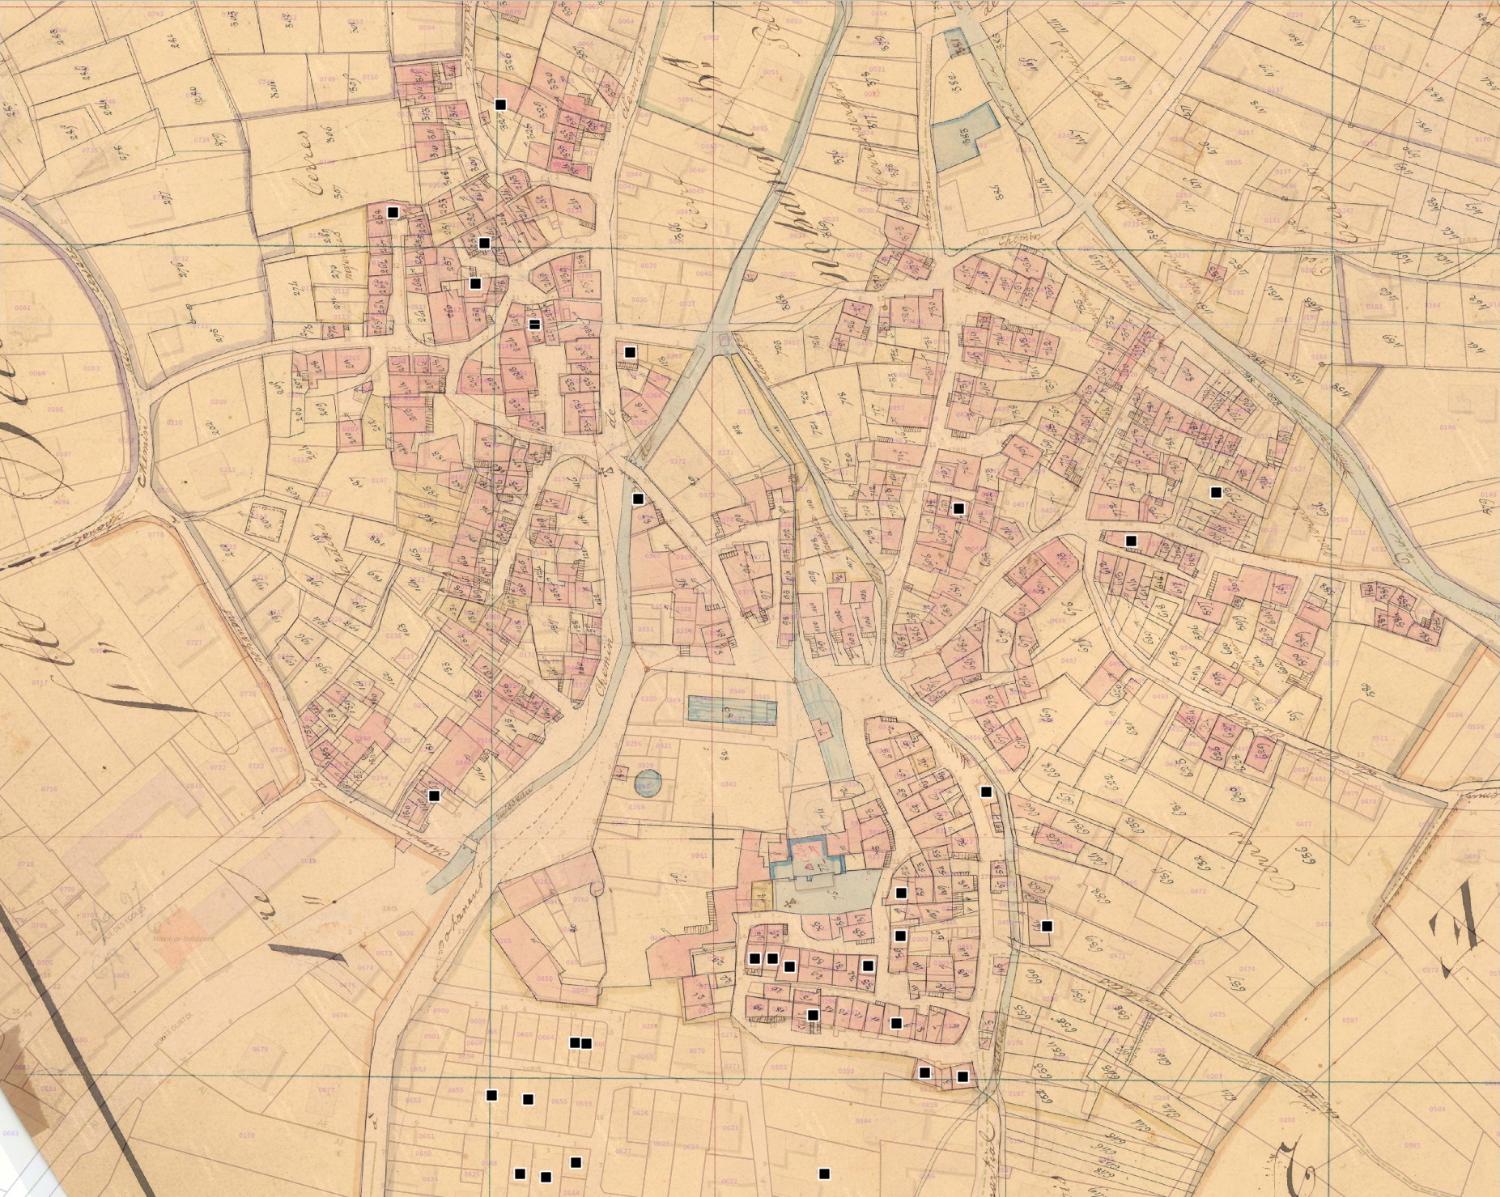 Commune de Nohanent : localisation des maisons vigneronnes (cadastre dit napoléonien, 1831, AD Puy-de-Dôme, 51 Fi 809)